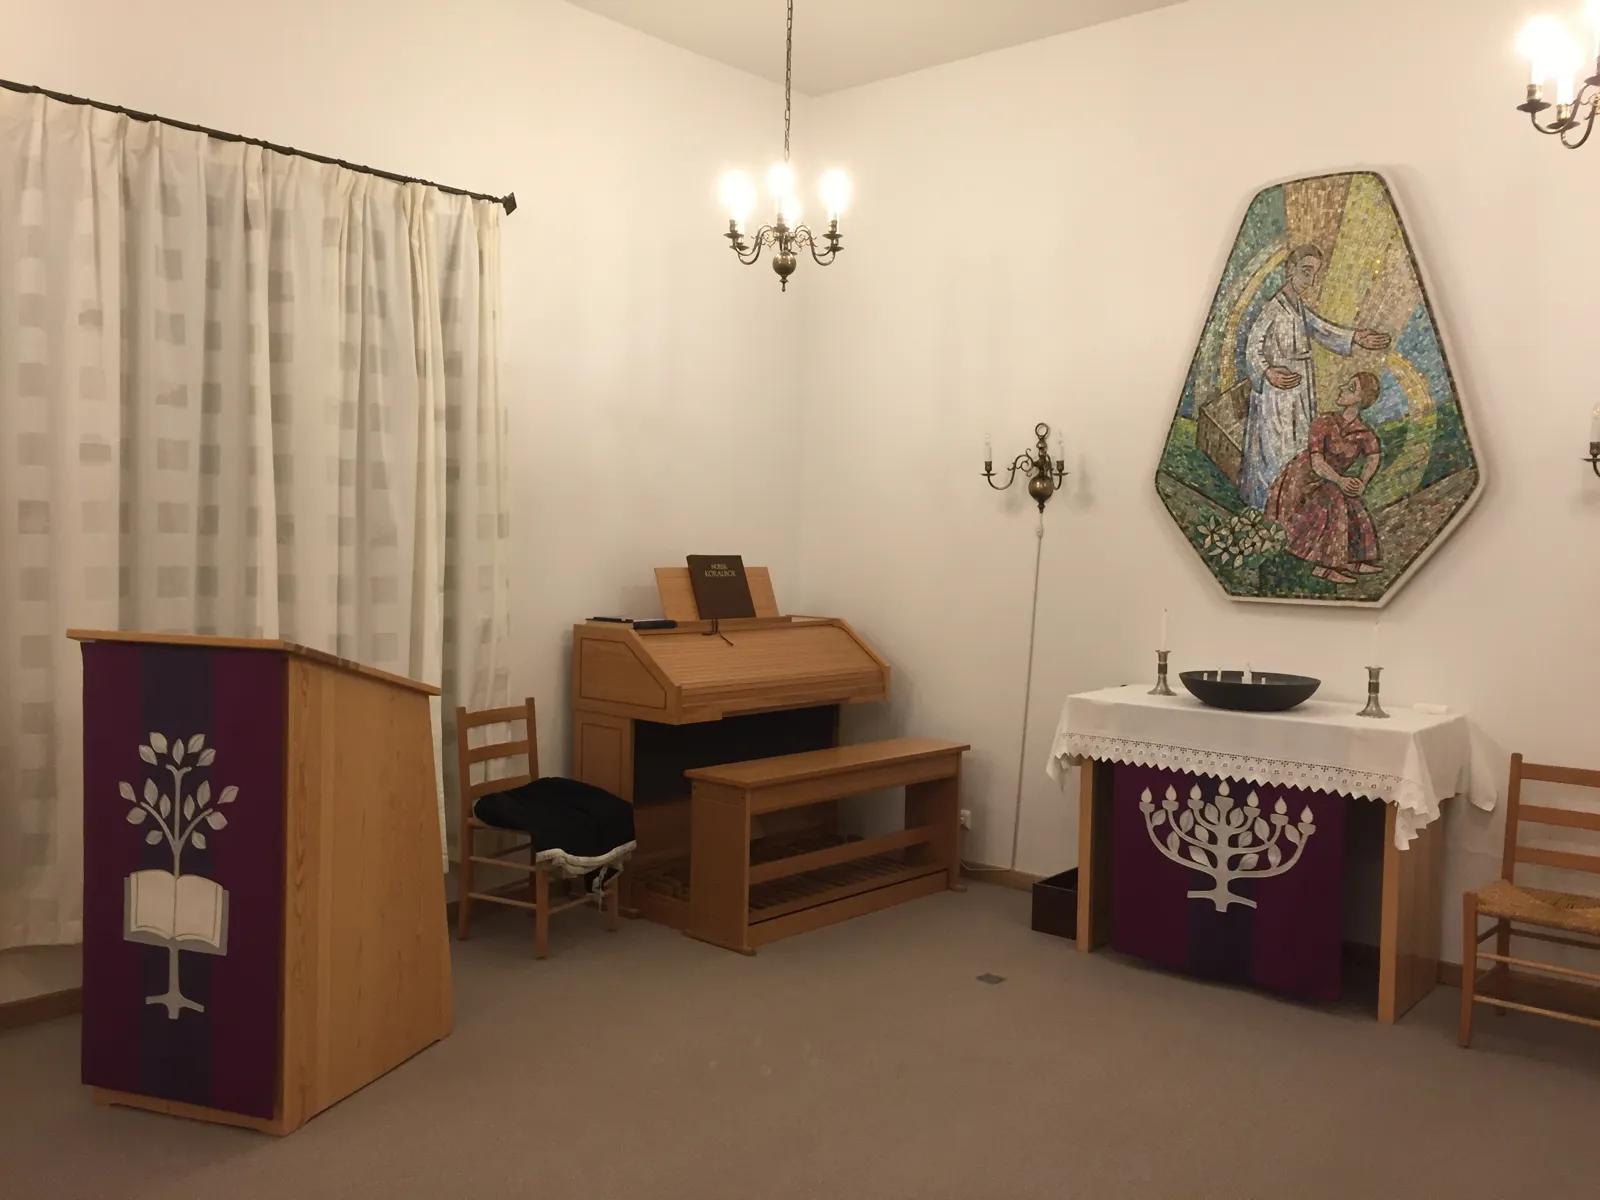 Et rom med maleri, piano, bord og stoler